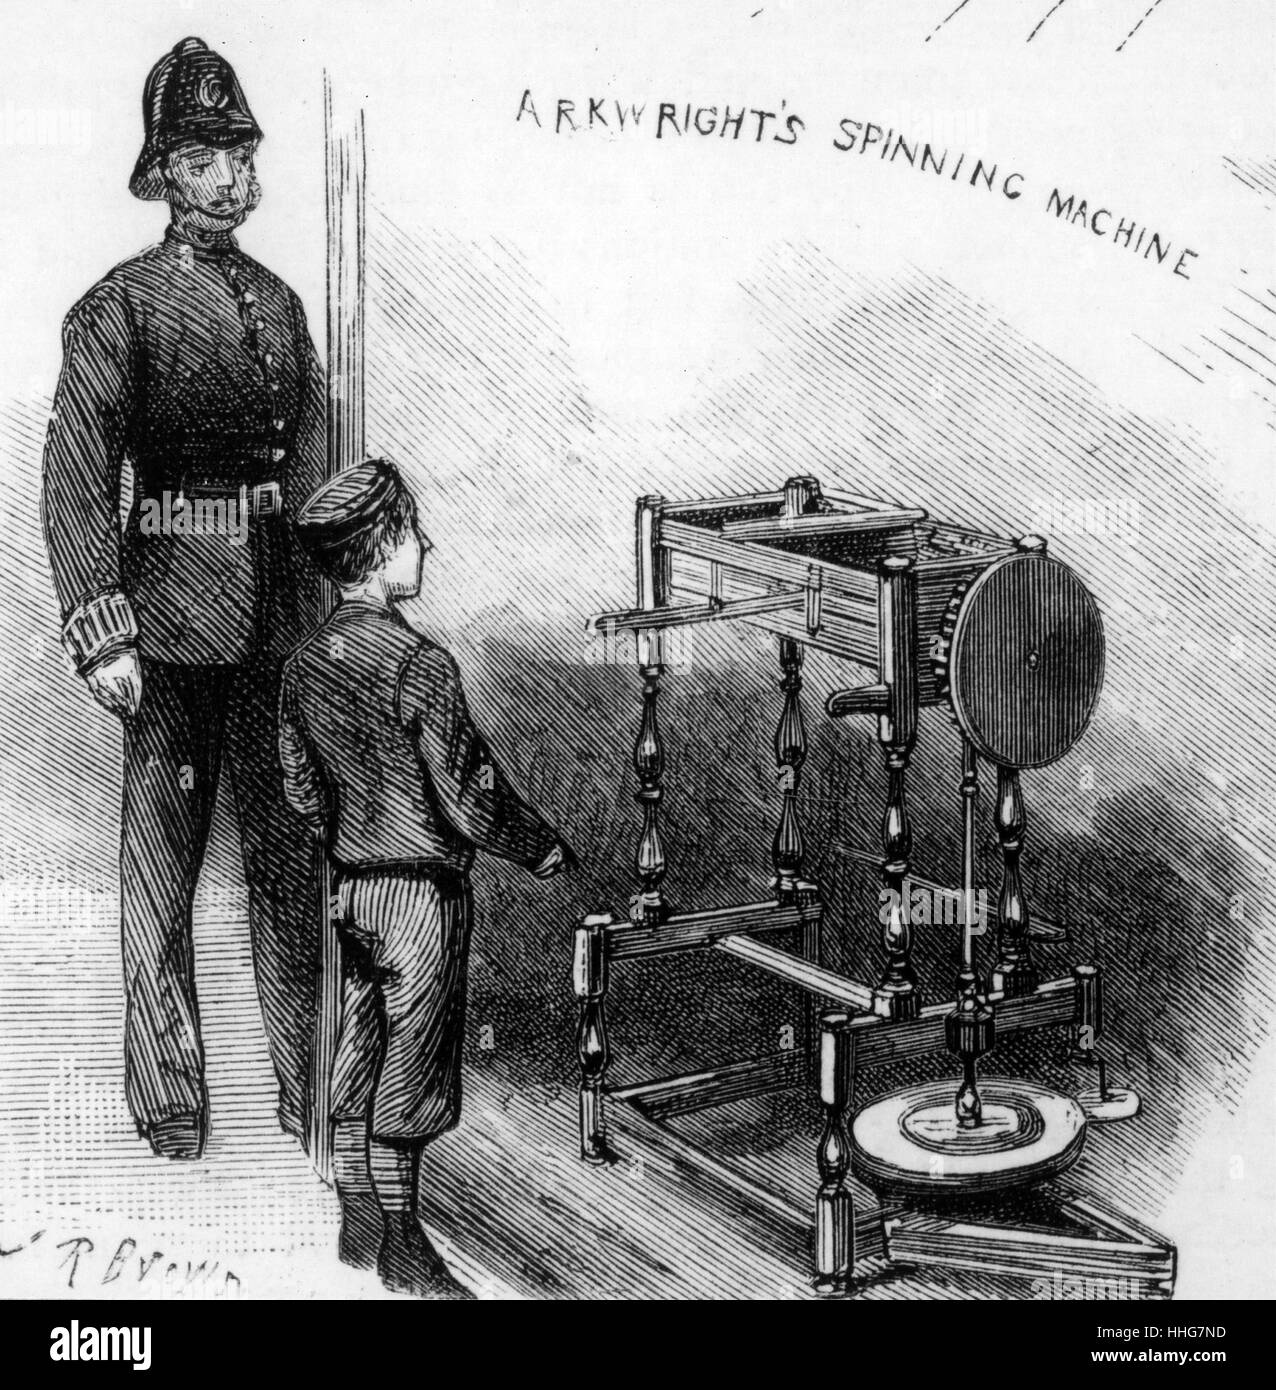 Abbildung: Darstellung von Arkwright wasser Rahmen Spinnmaschine; auf Anzeige an der Patente Museum, South Kensington, London. Vom 19. Jahrhundert Stockfoto